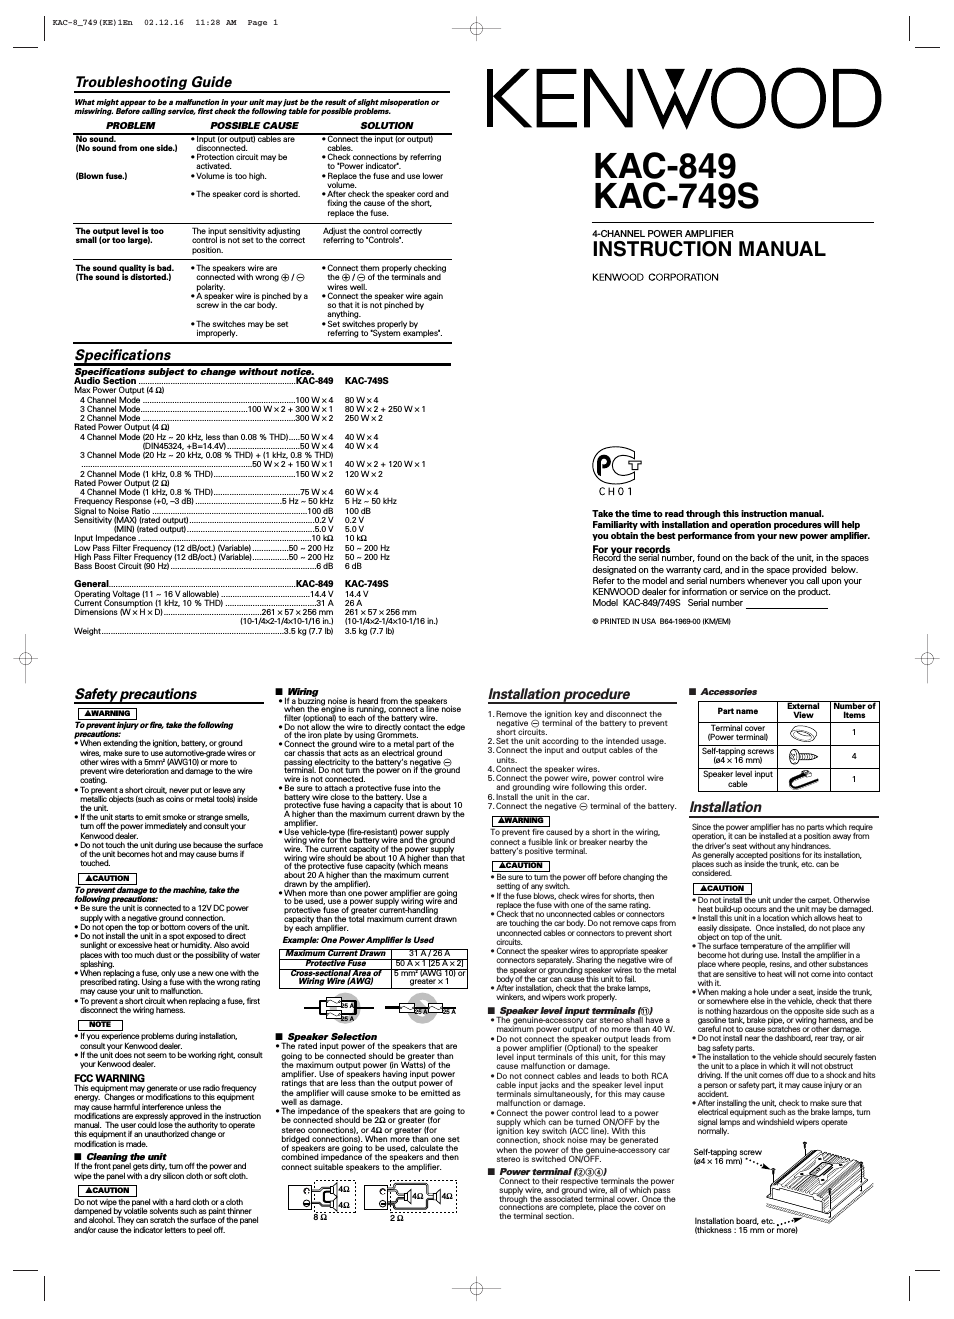 KAC-749S